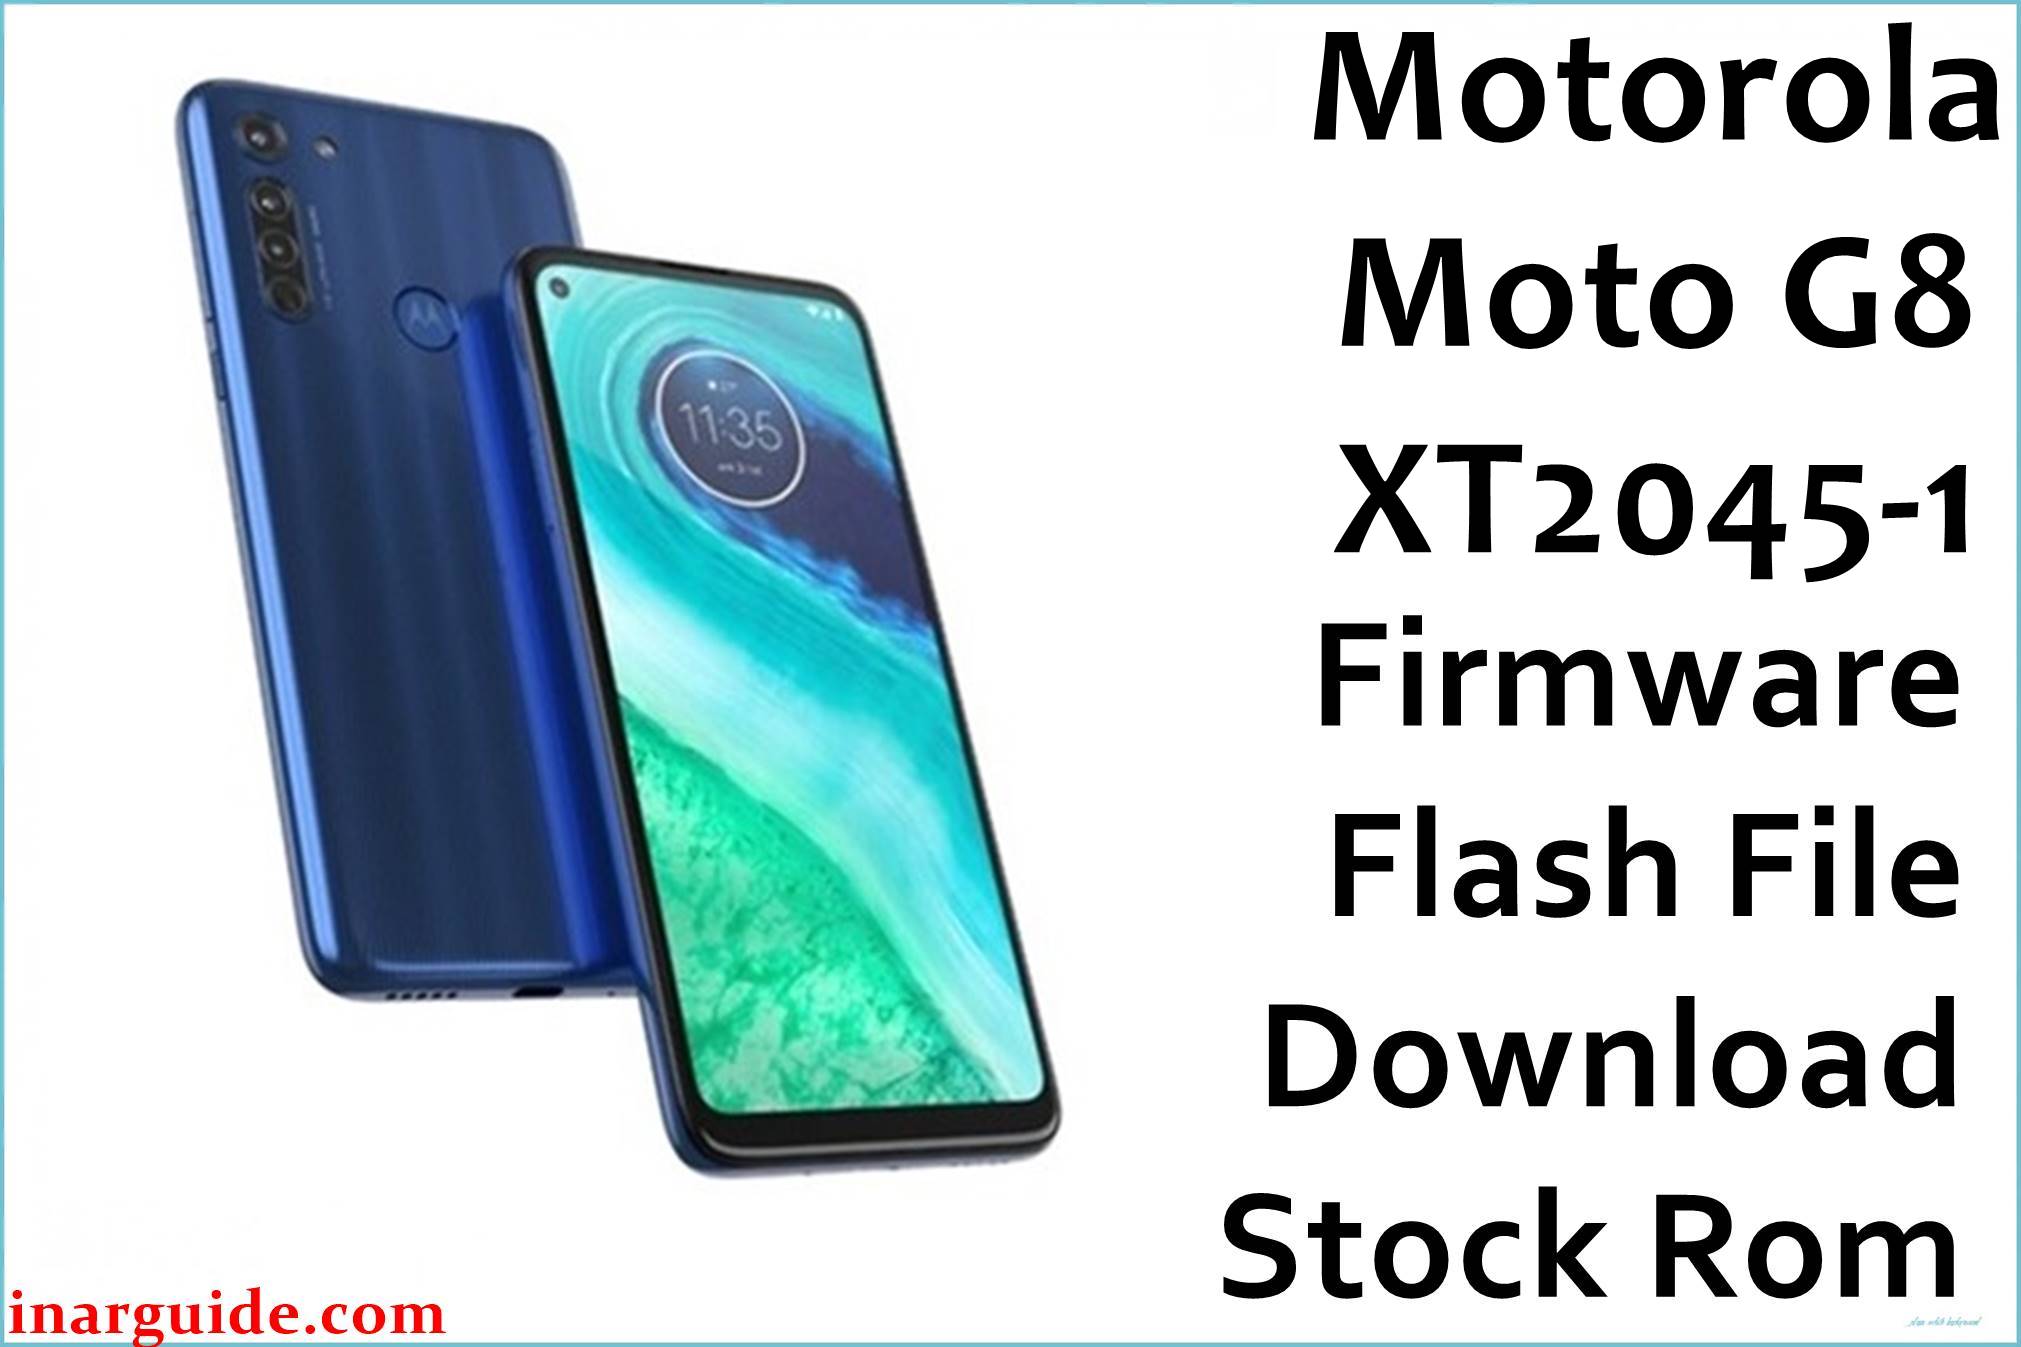 Motorola Moto G8 XT2045-1